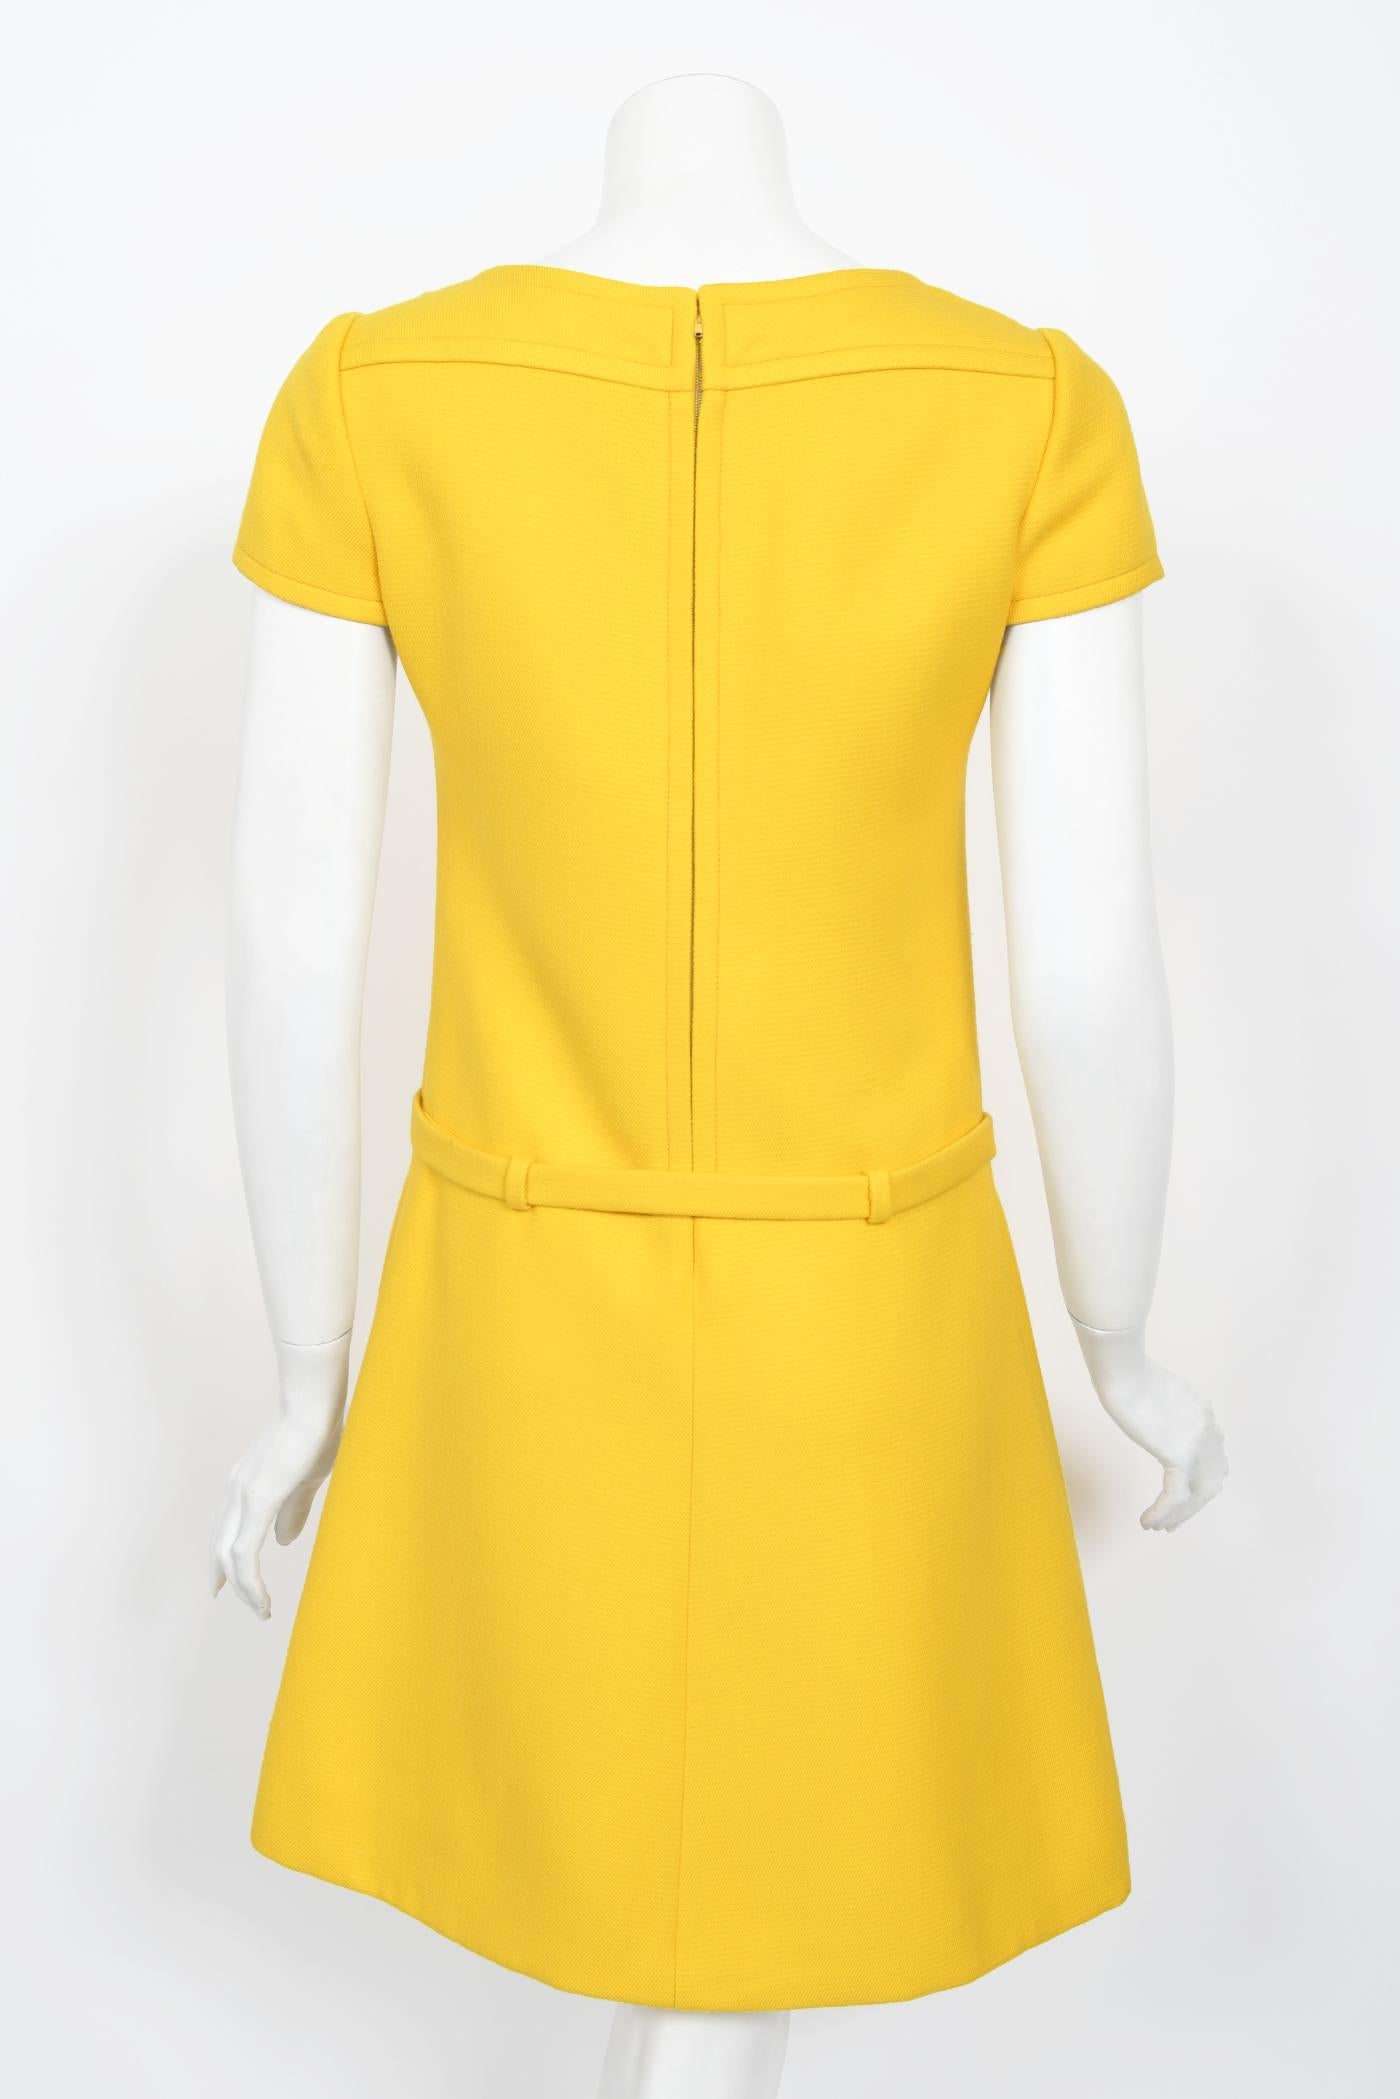 Vintage 1968 André Courrèges Paris Couture Yellow Wool Belt Space-Age Mod Dress 10